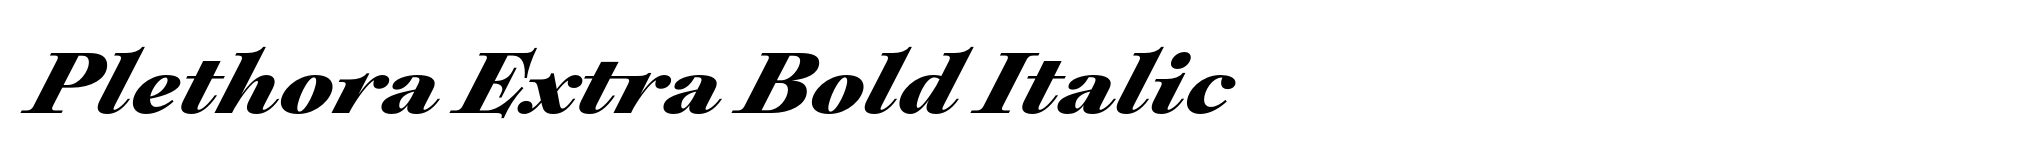 Plethora Extra Bold Italic image